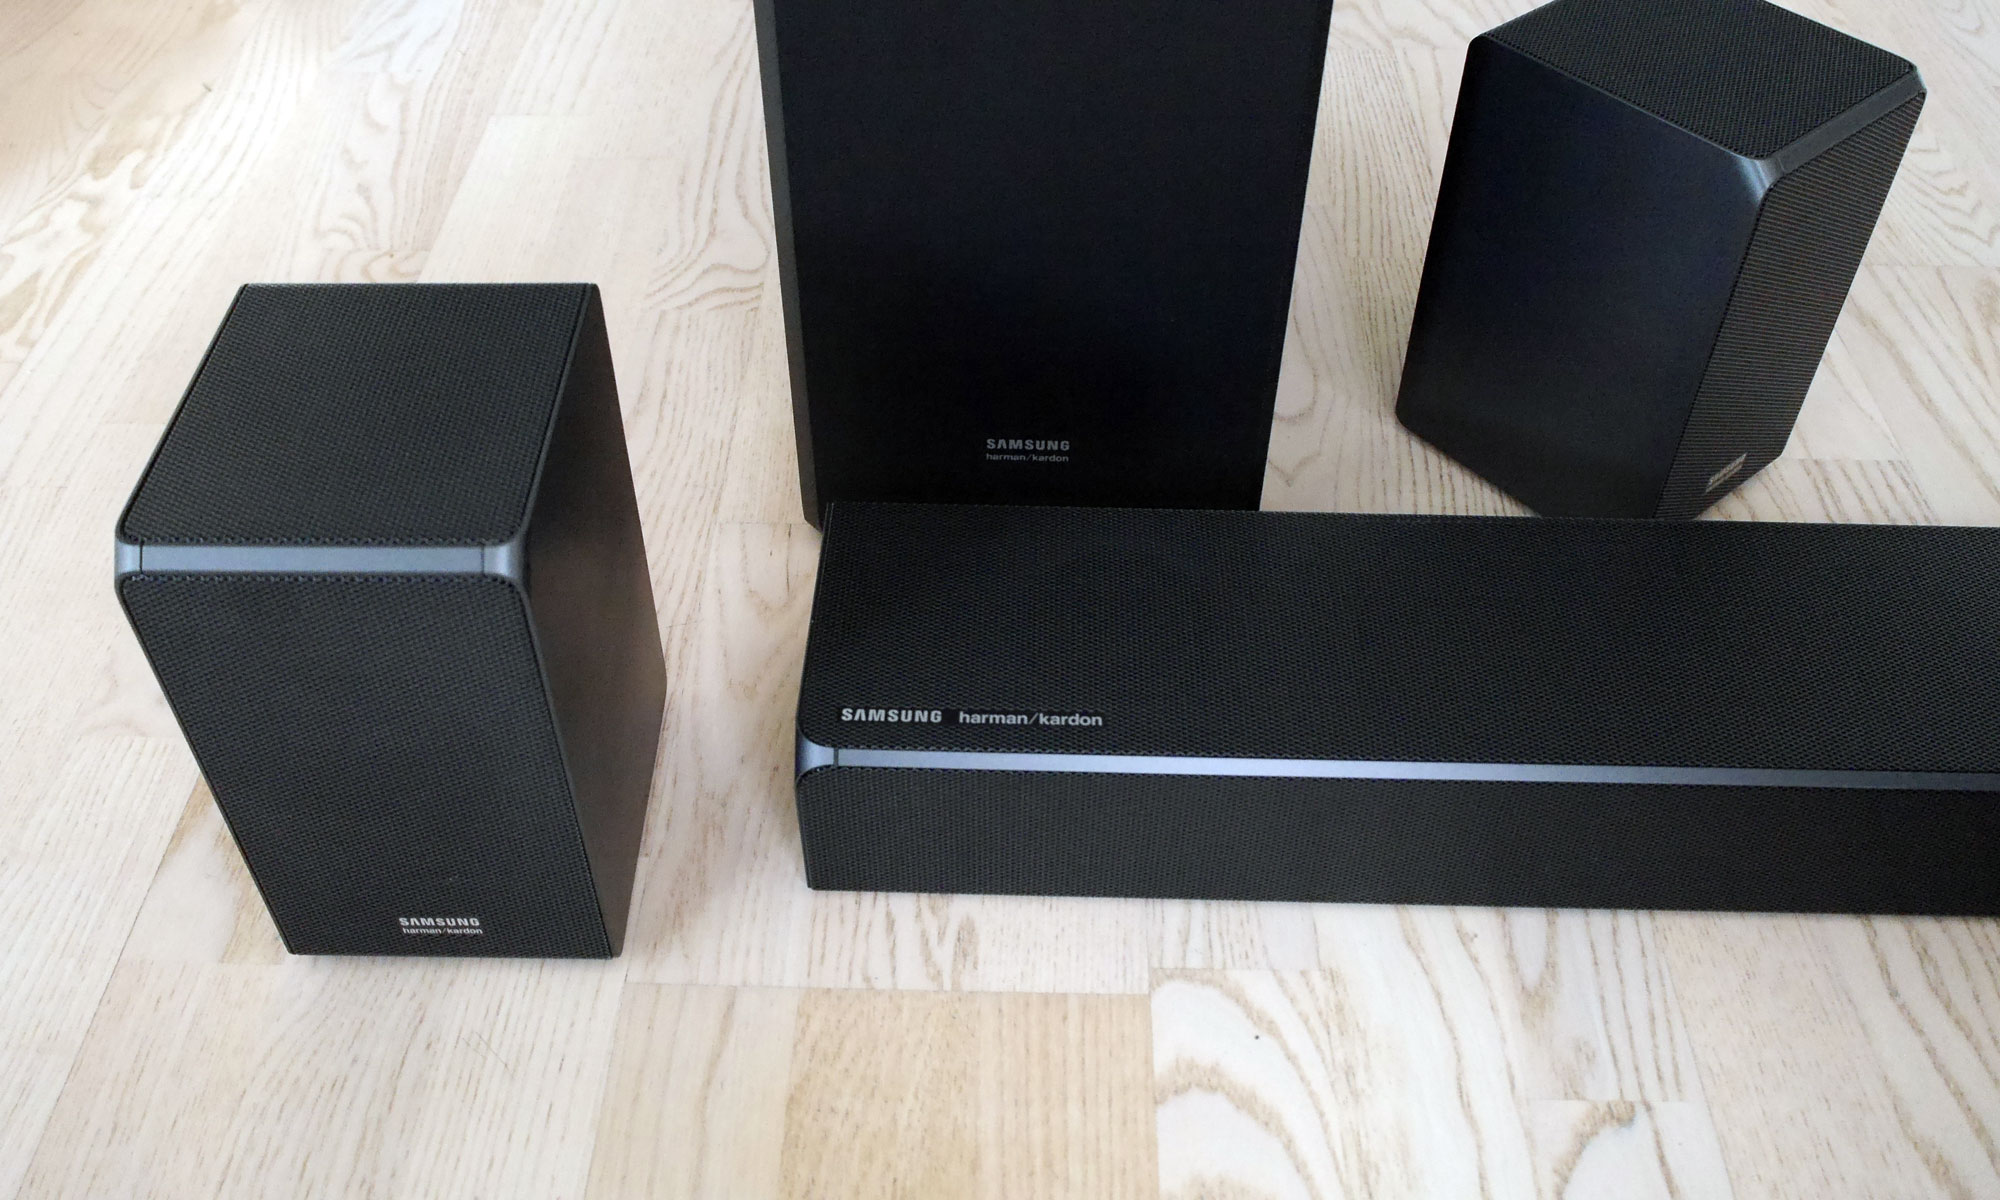 Samsung HW-N950 y HW-N850, barras de sonido Dolby Atmos y DTS:X